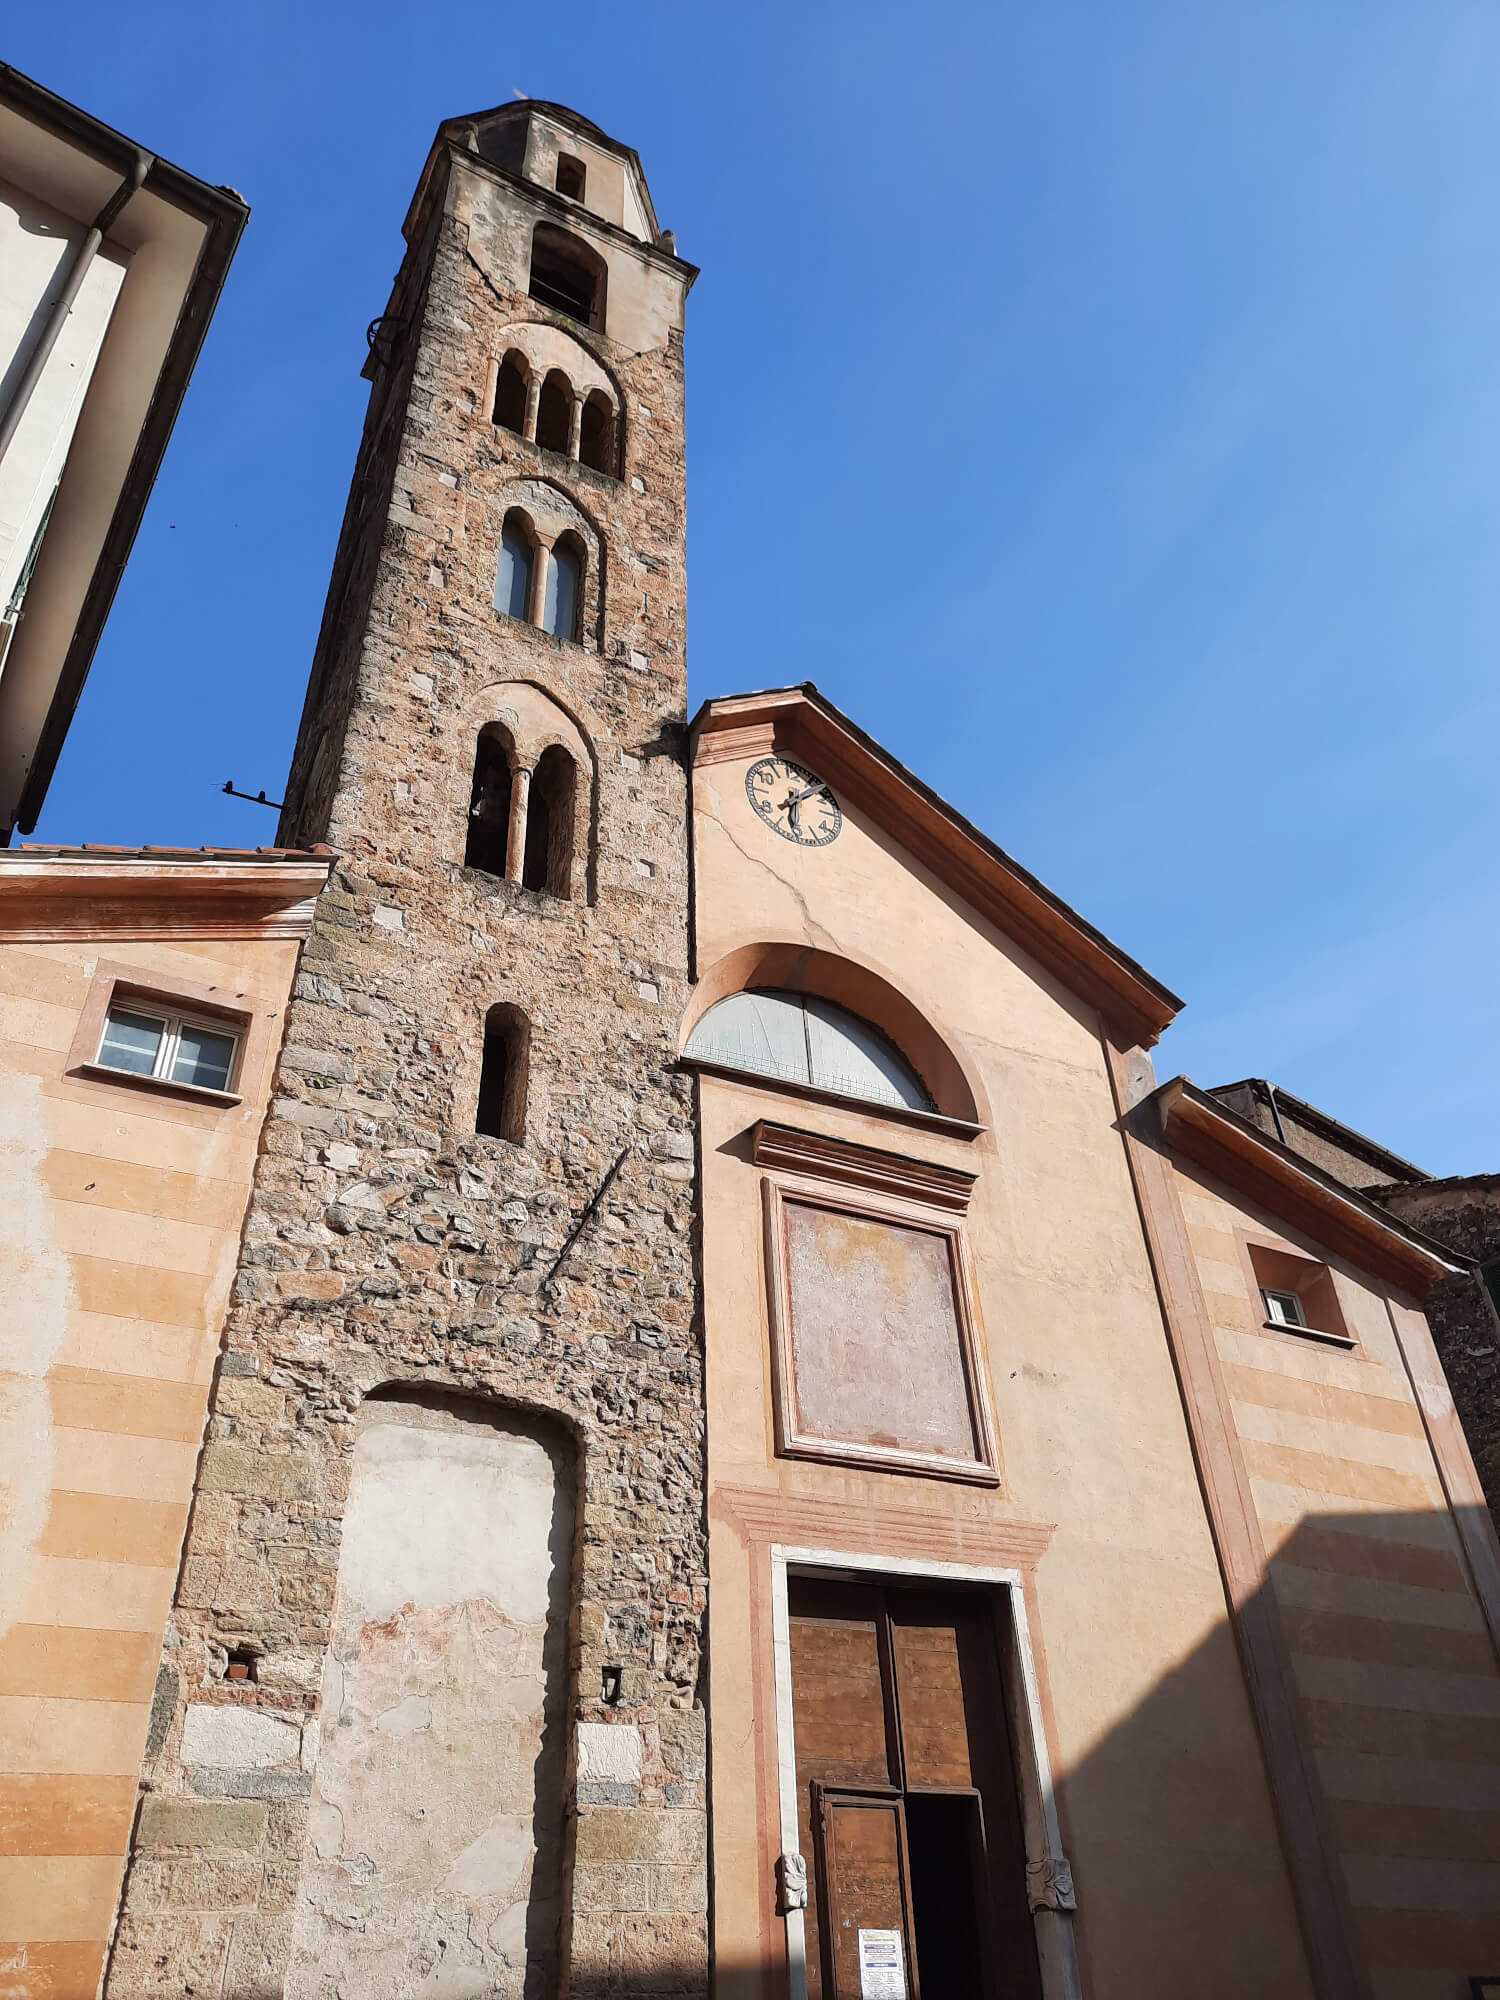 The church of San Bartolomeo